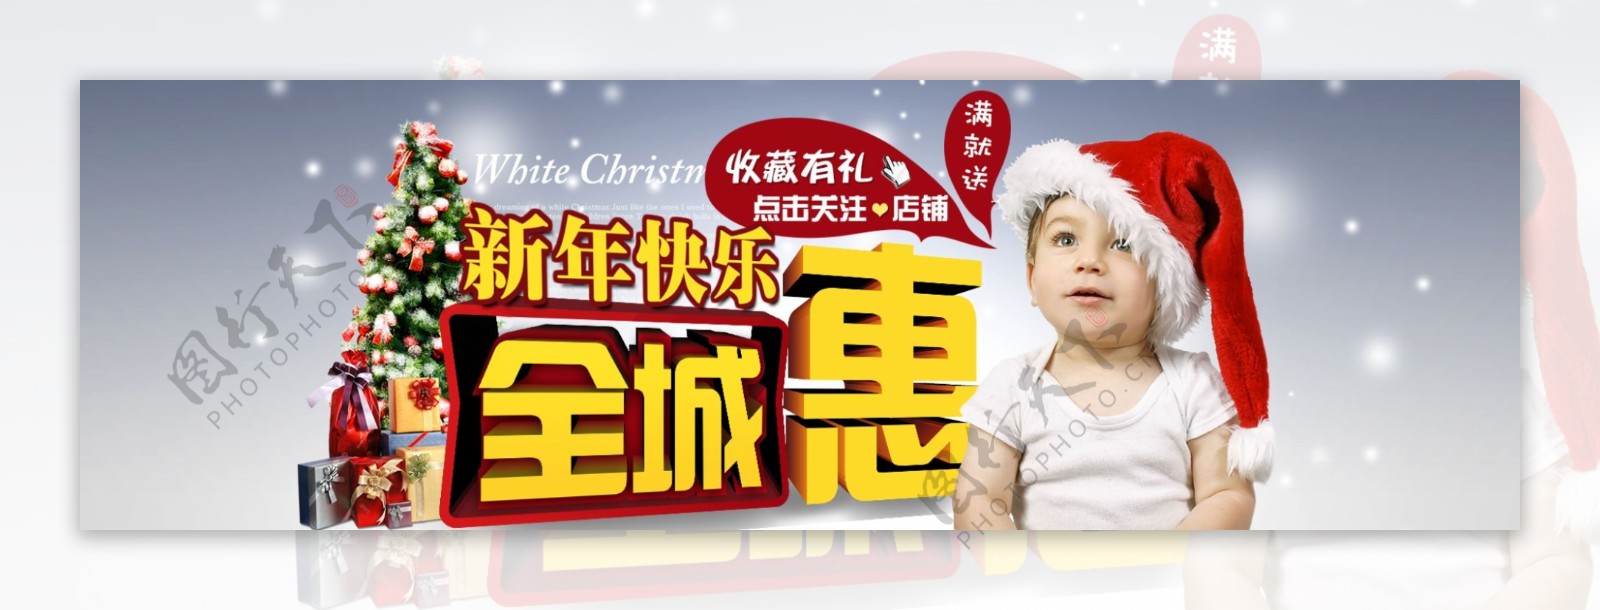 新年快乐全城钜惠雪景儿童圣诞节海报